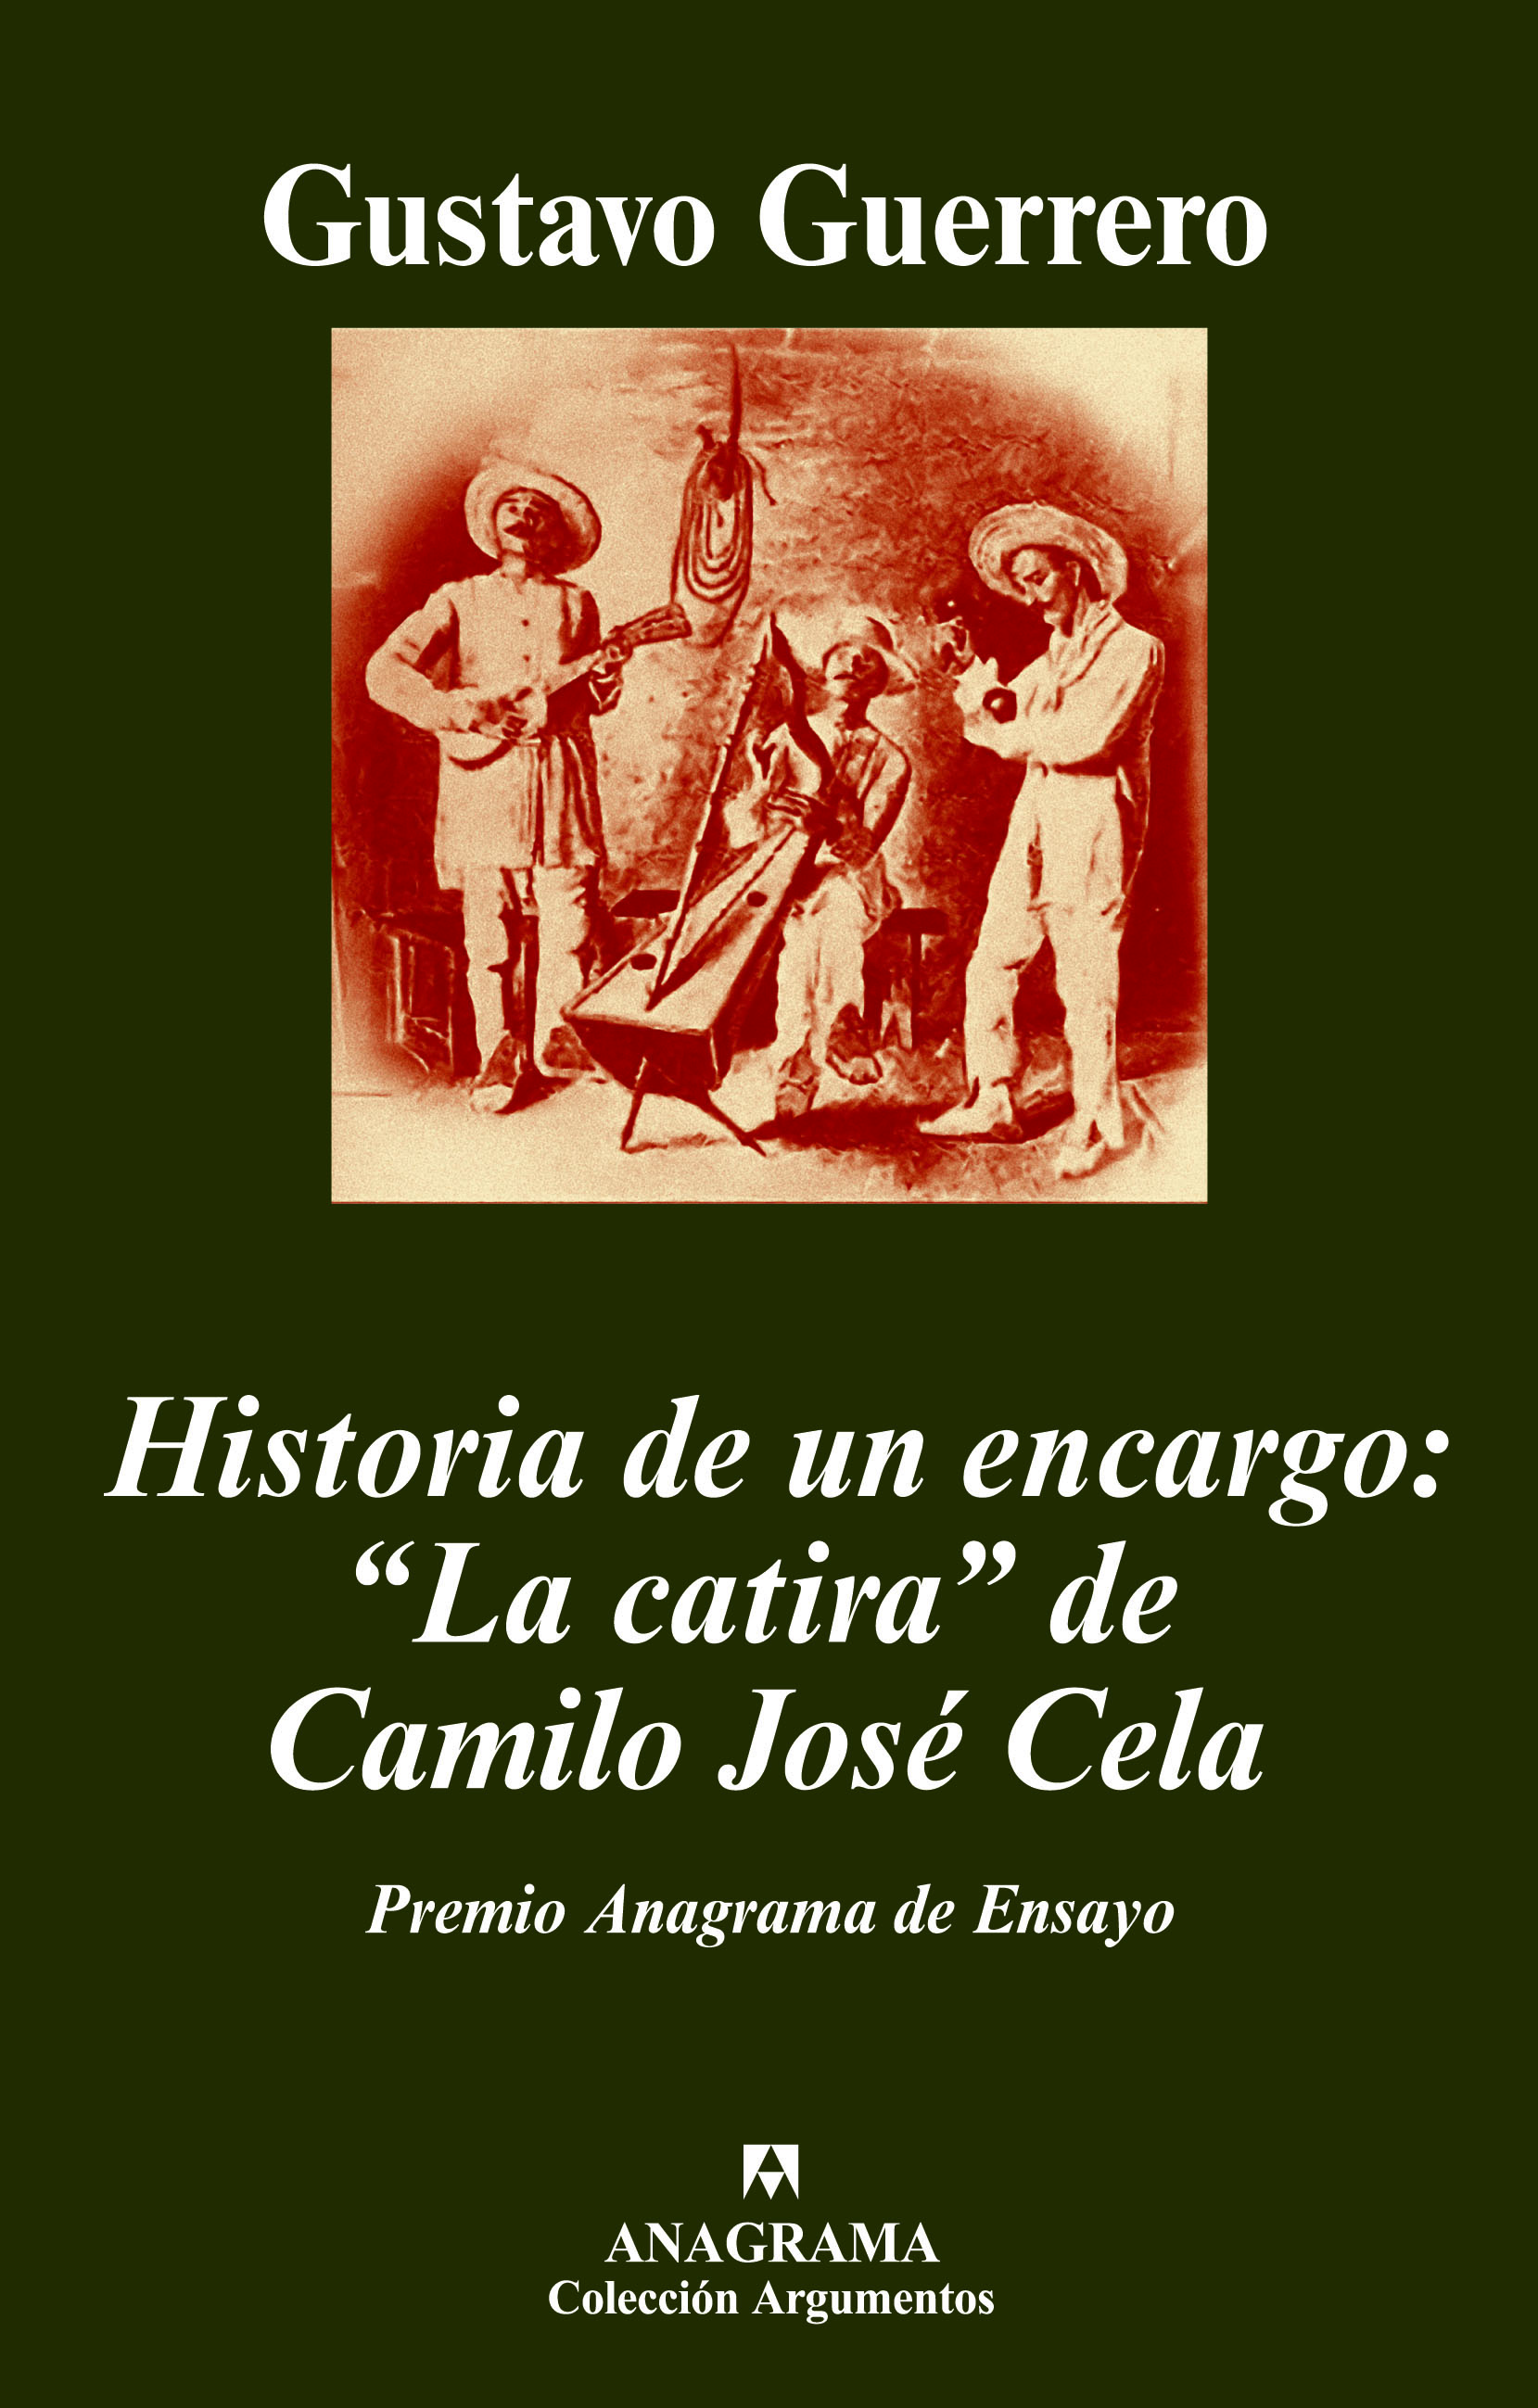 Historia de un encargo: de Camilo José Cela Gustavo - 978-84-339-6274-4 - Editorial Anagrama